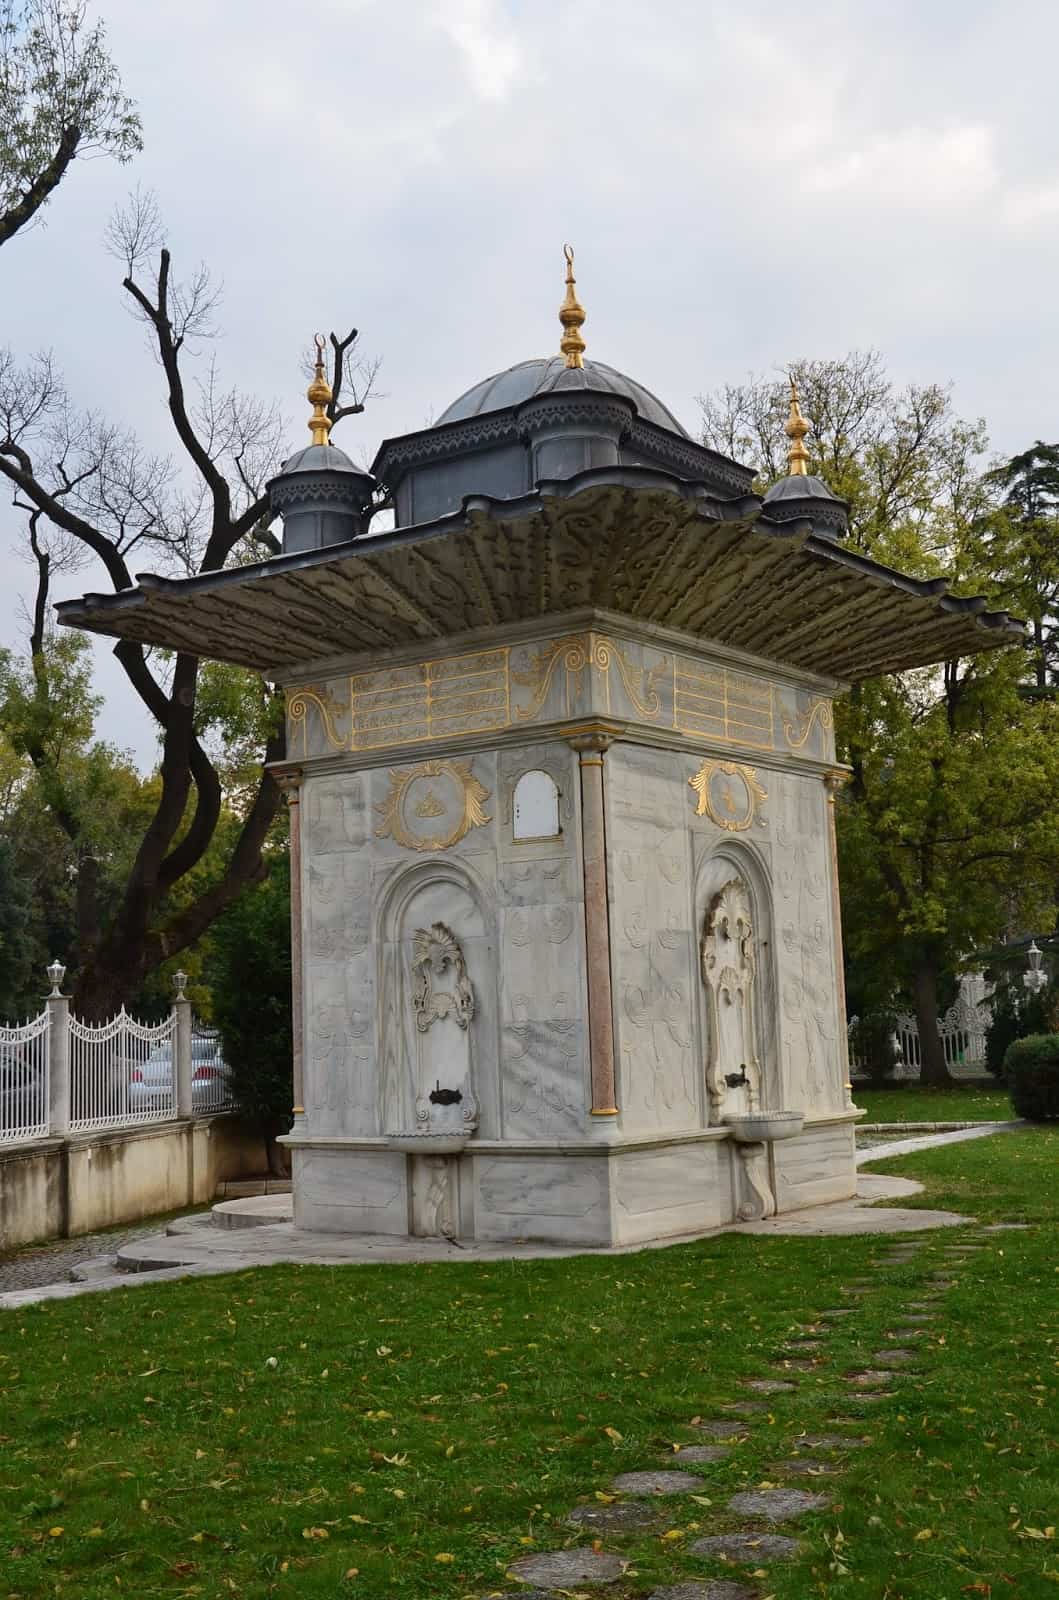 Mihrişah Valide Sultan Çeşmesi at Küçüksu Pavilion in Istanbul, Turkey